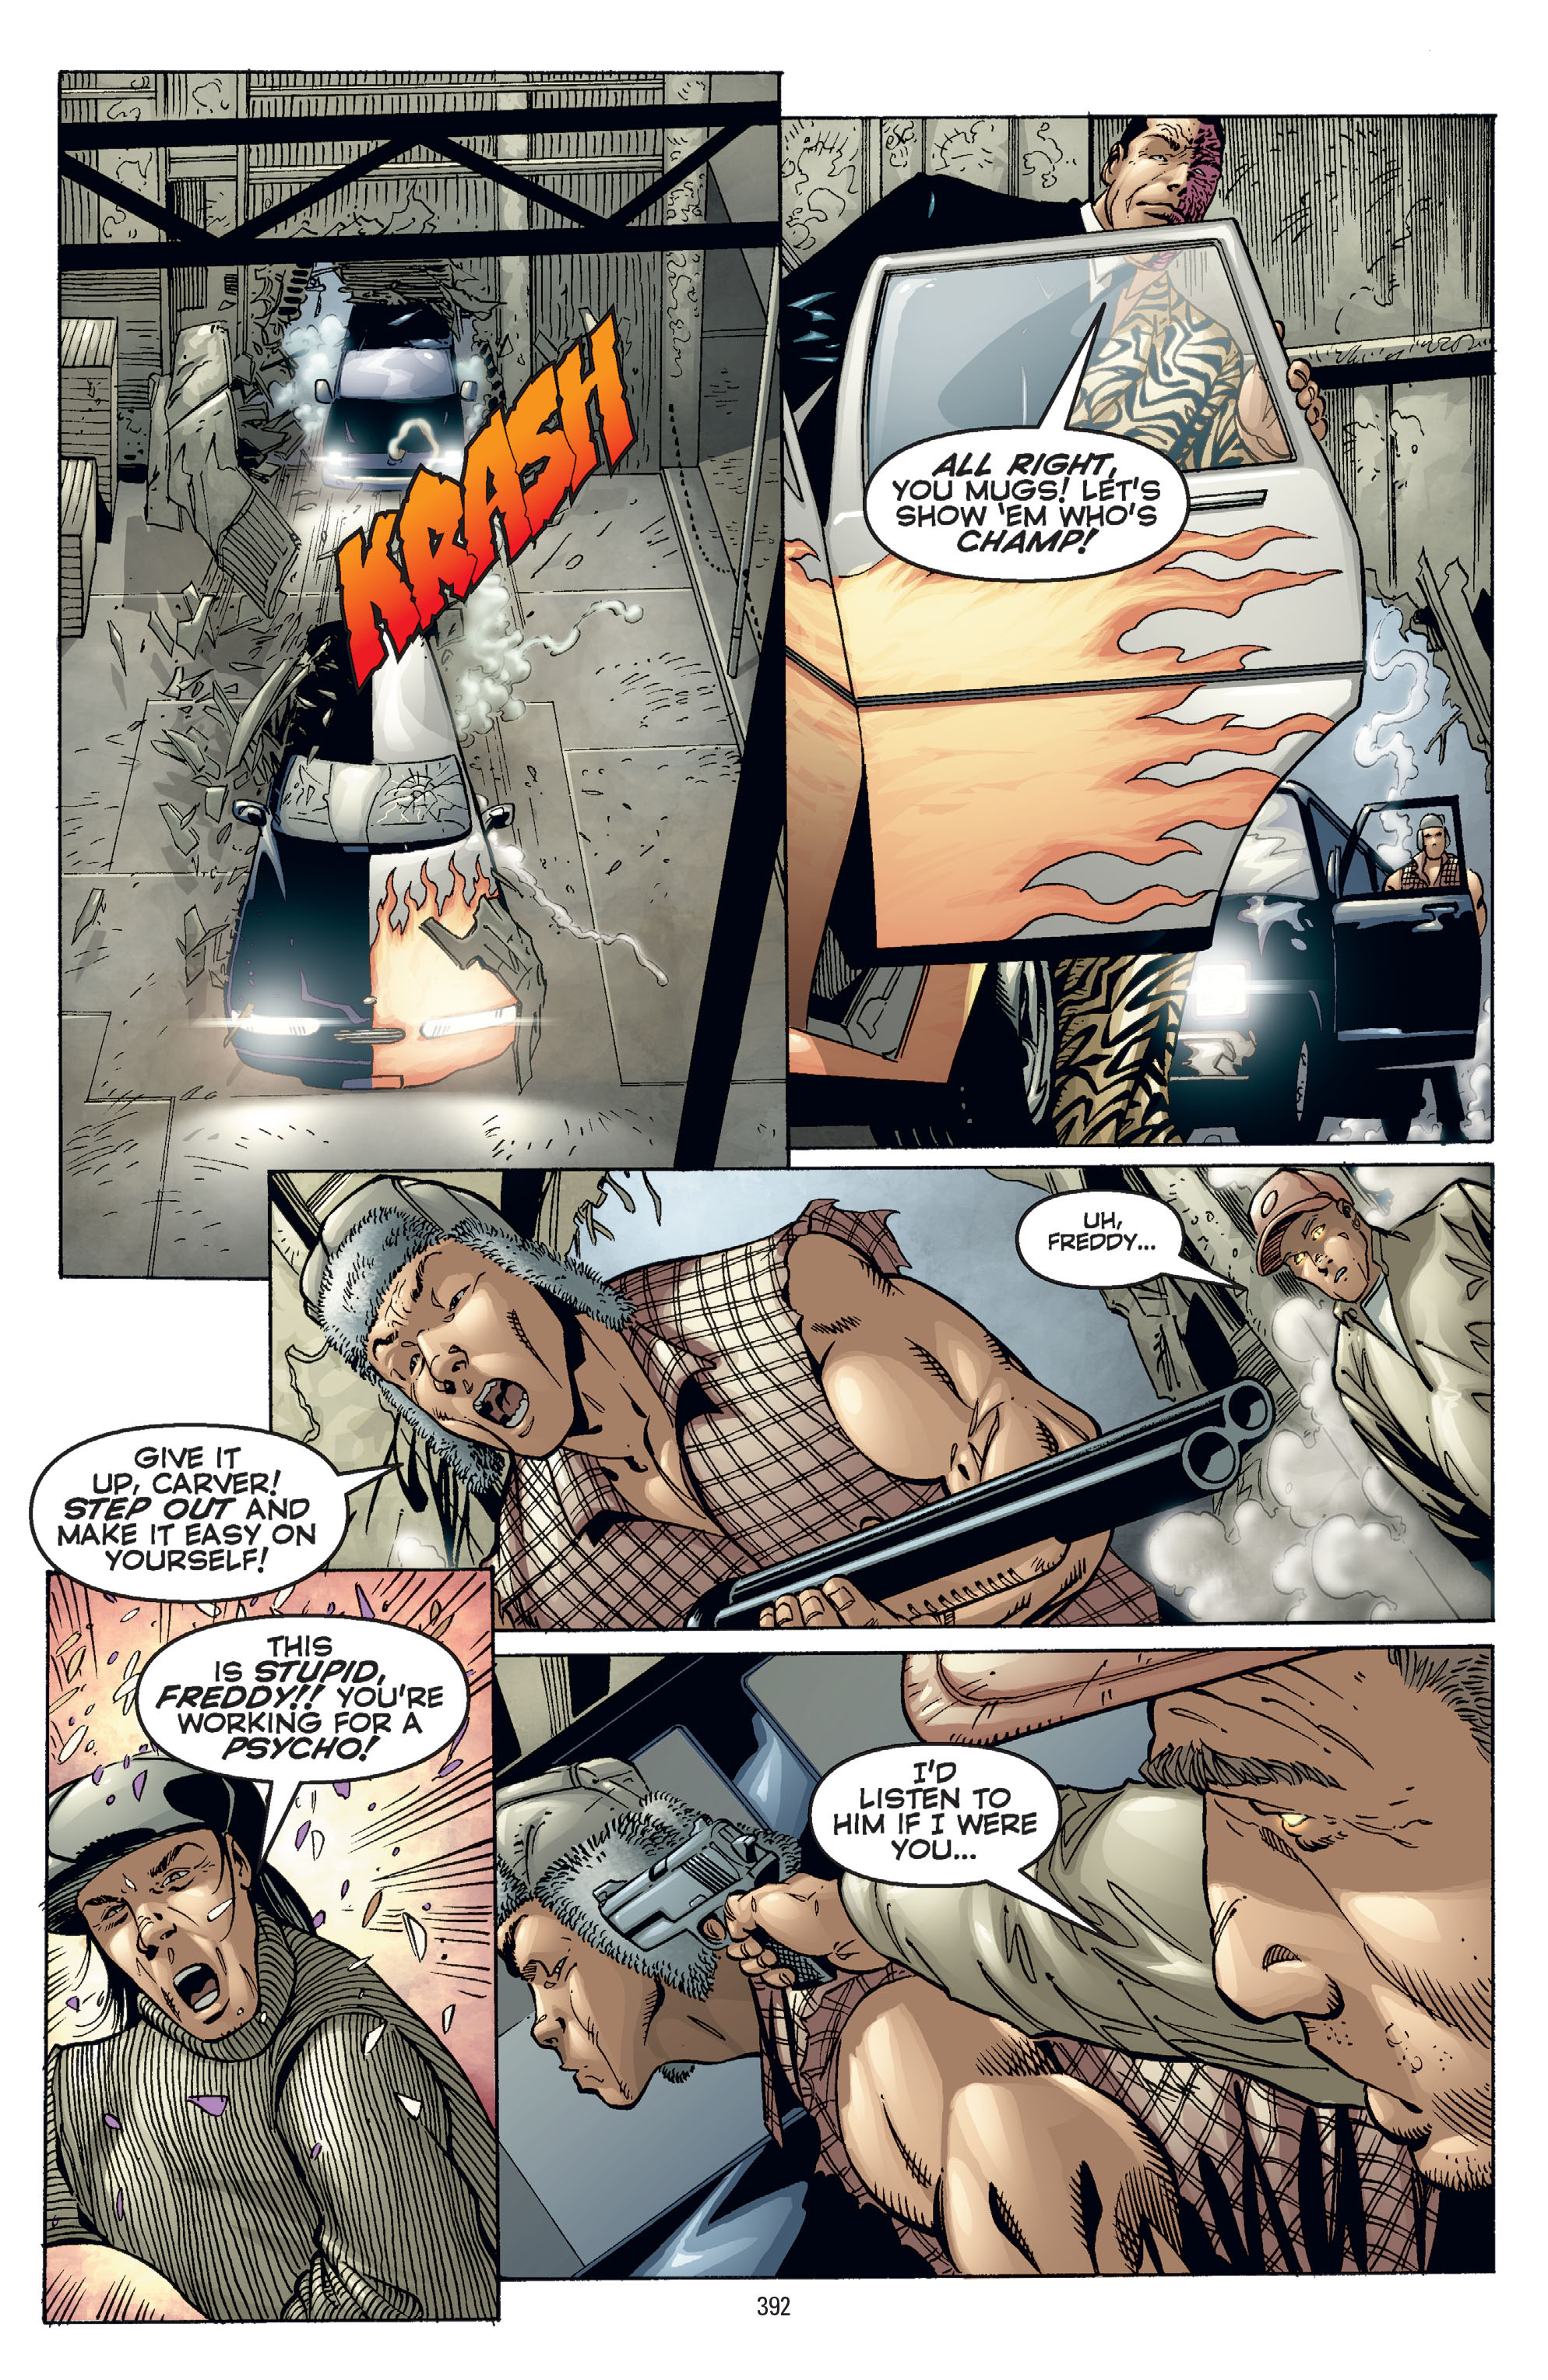 DC Comics/Dark Horse Comics: Justice League Full #1 - English 382